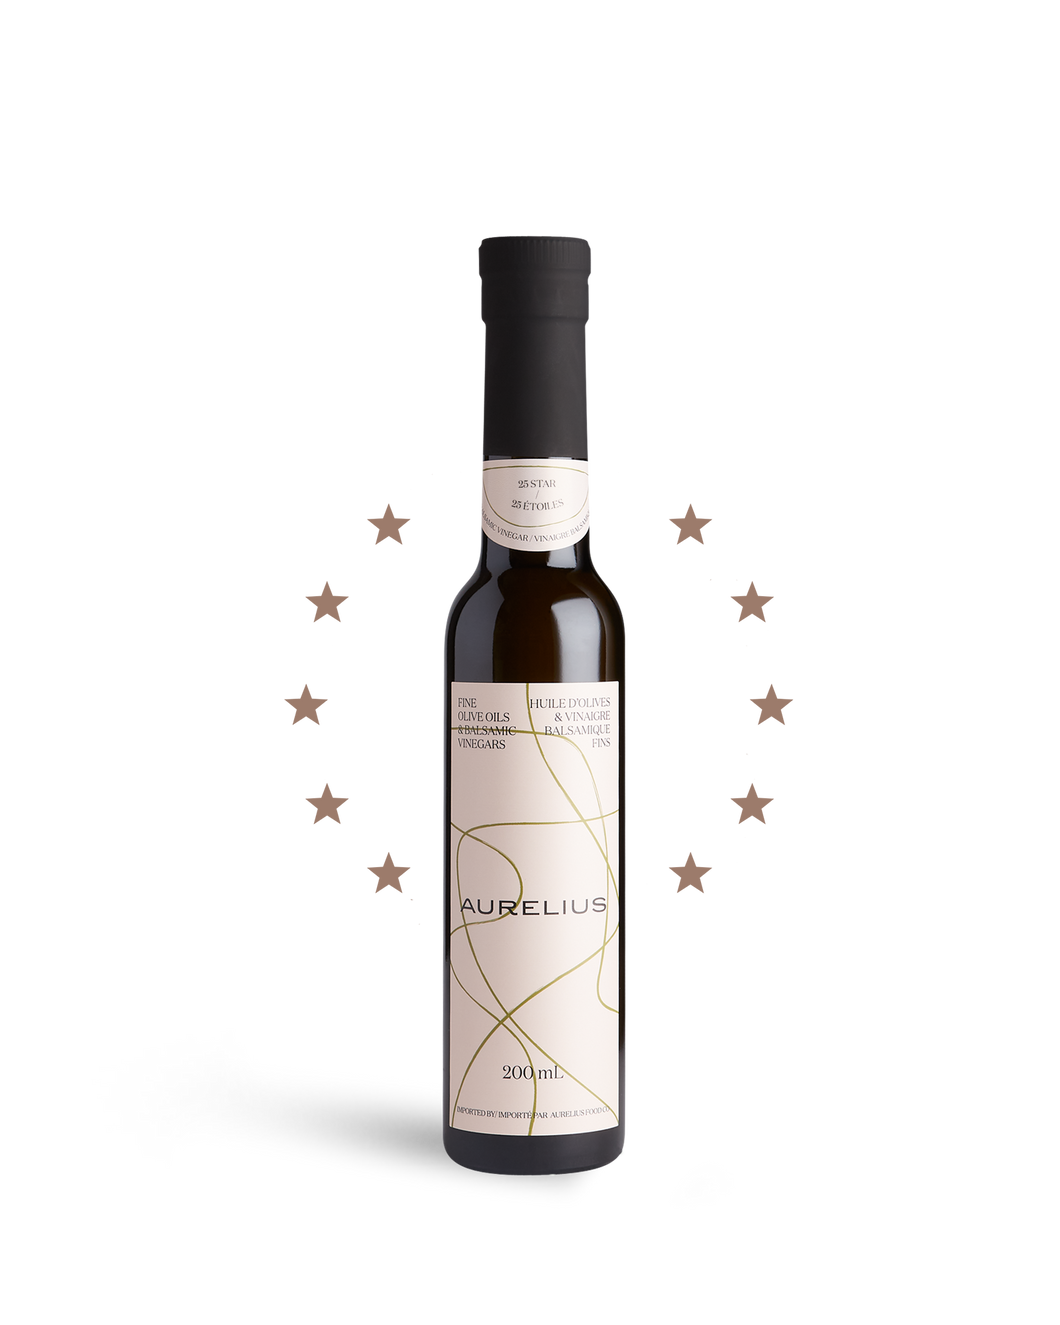 25 Star White Balsamic Vinegar